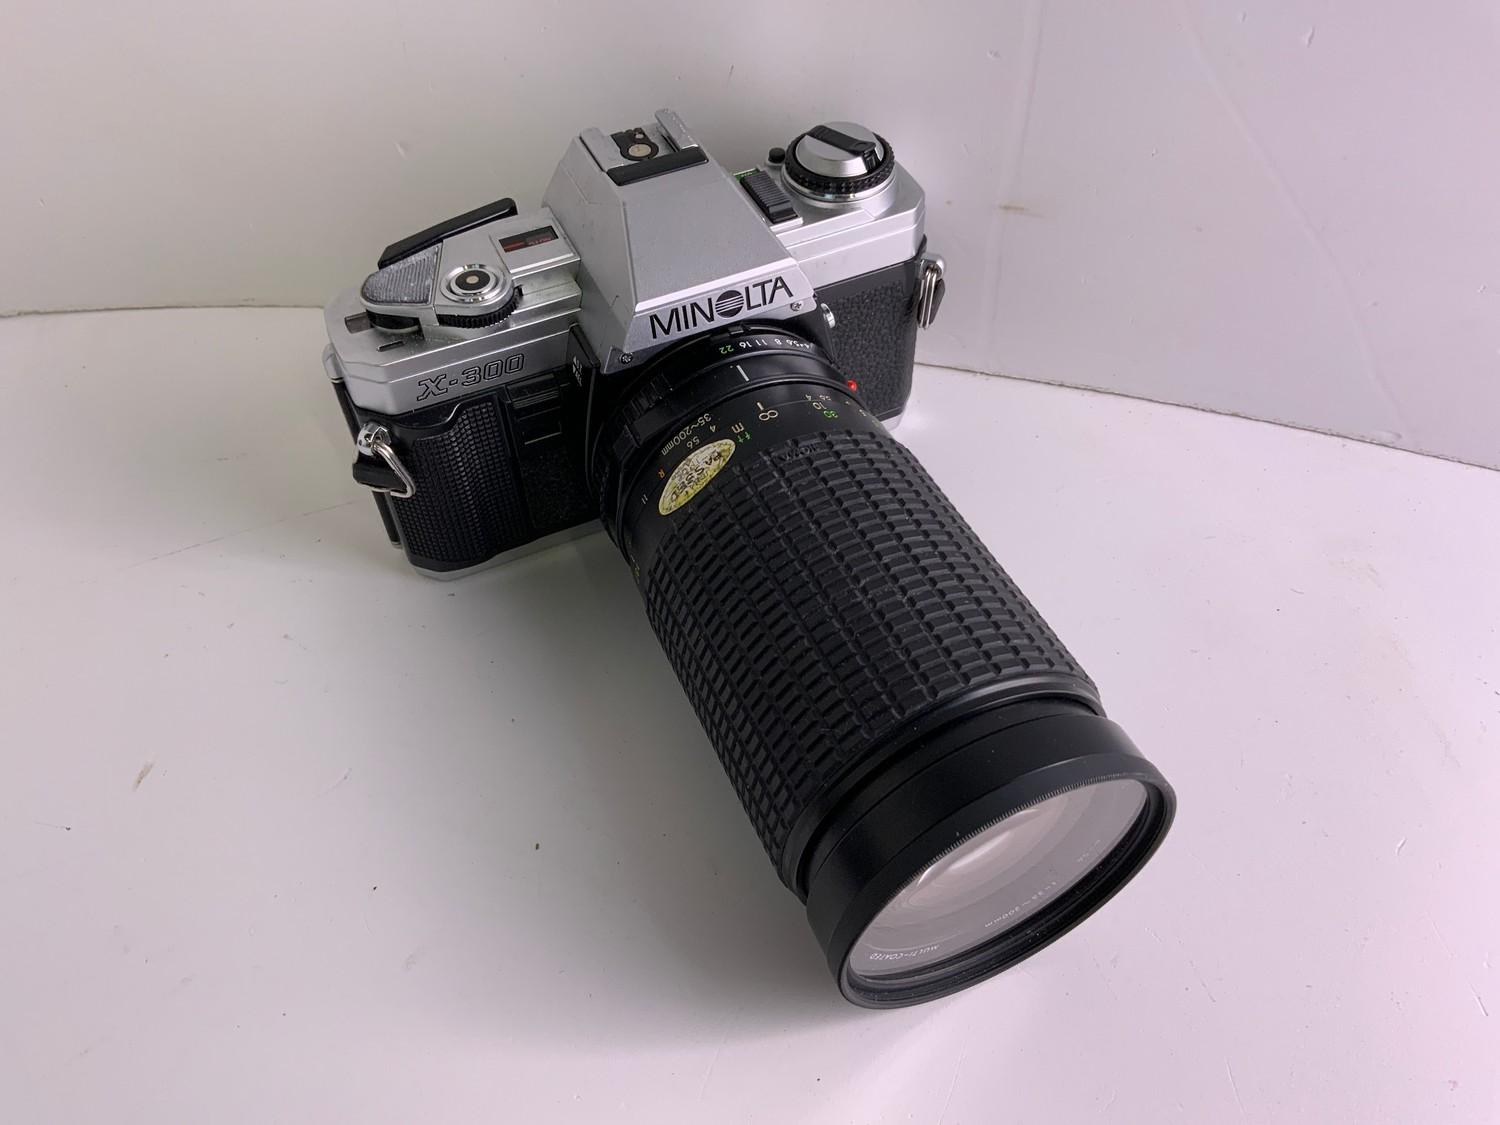 Minolta Camera in Bag - Image 2 of 3